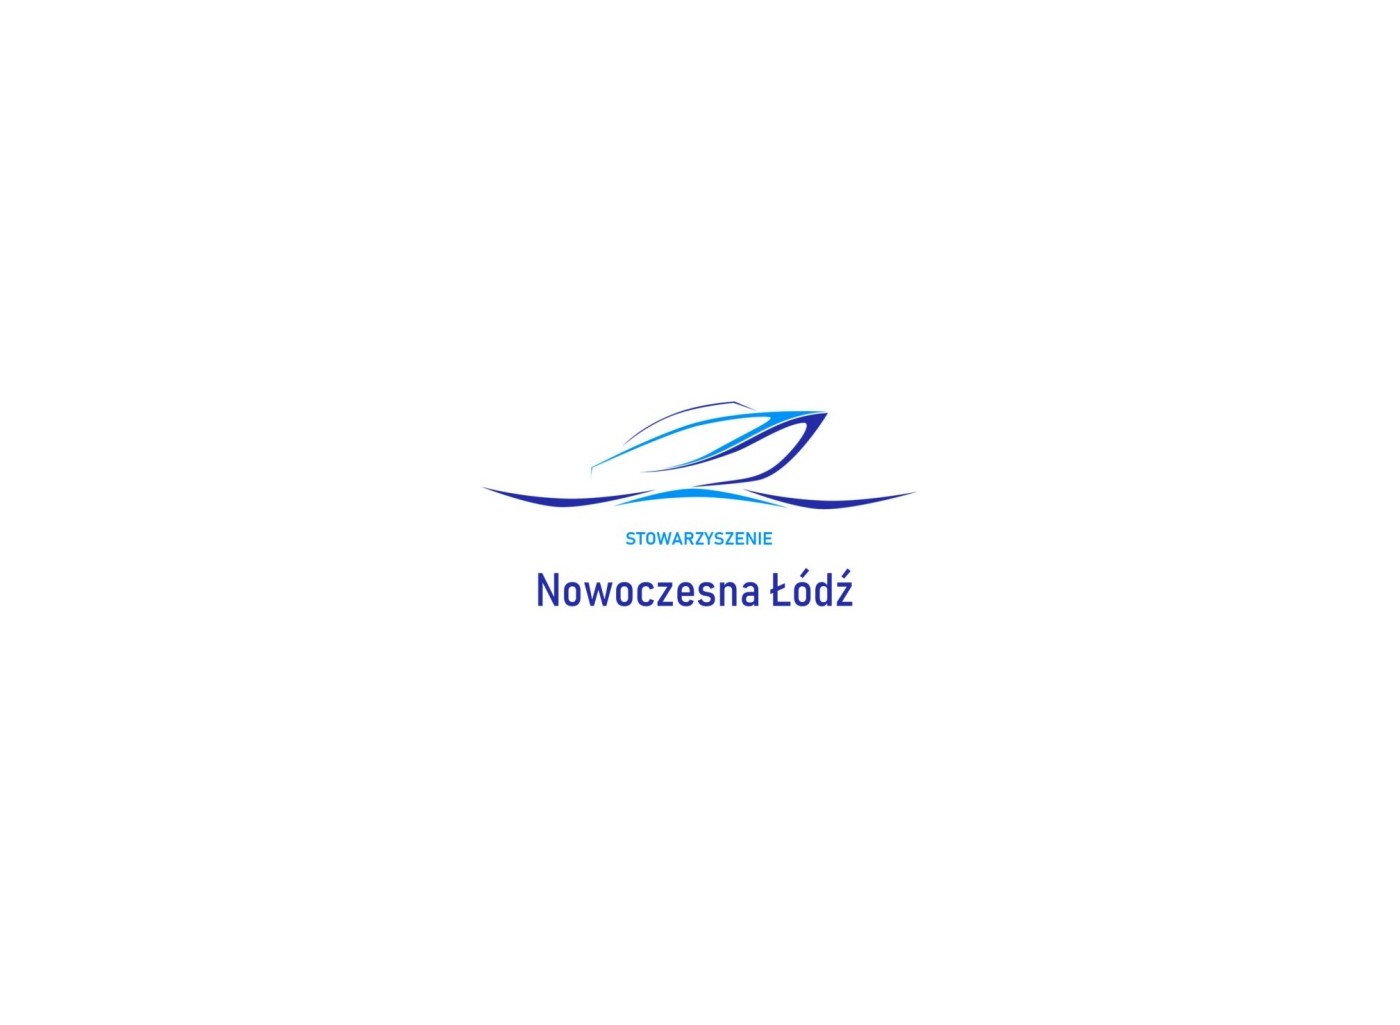 Stowarzyszenie Nowoczesna Łódź - logo